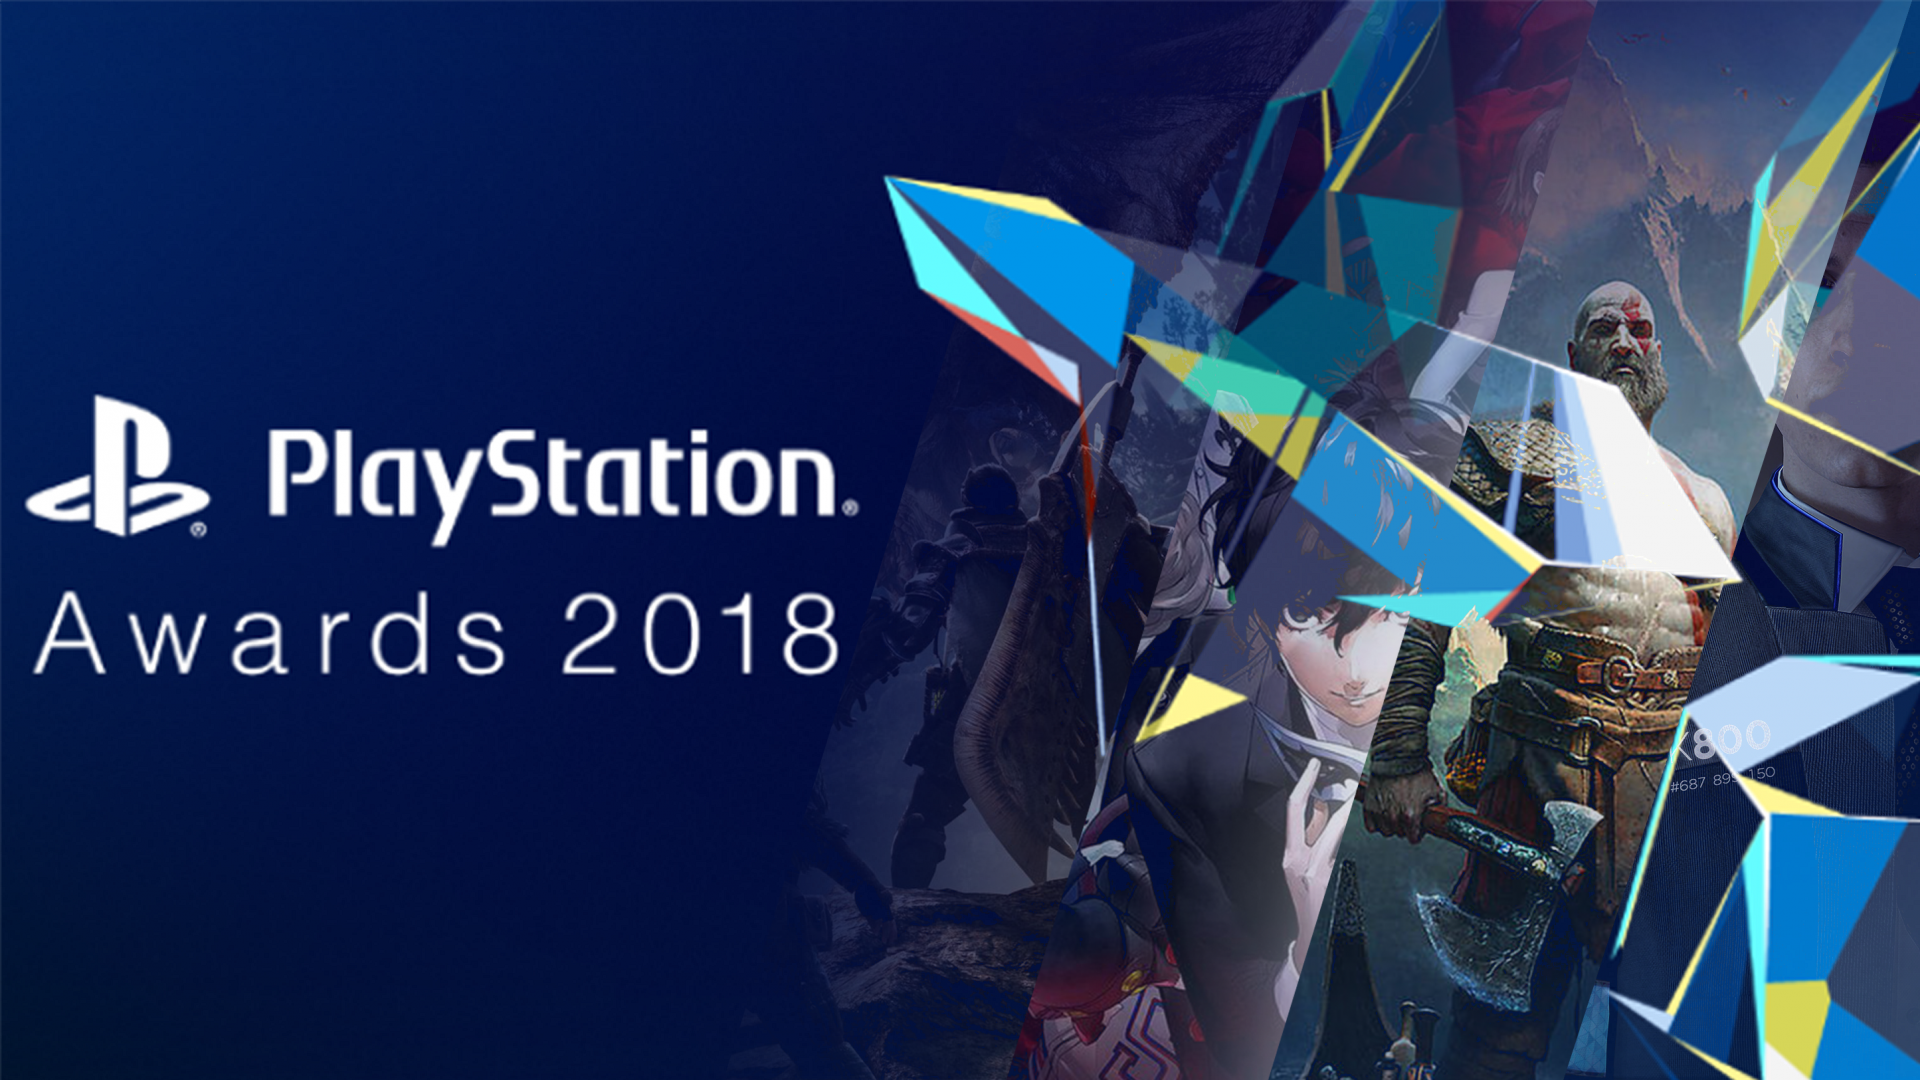 เผยรายชื่อเกมได้รับรางวัล PlayStation Awards 2018 พร้อมแคมเปญพิเศษบนเพลย์สเตชั่นสโตร์!